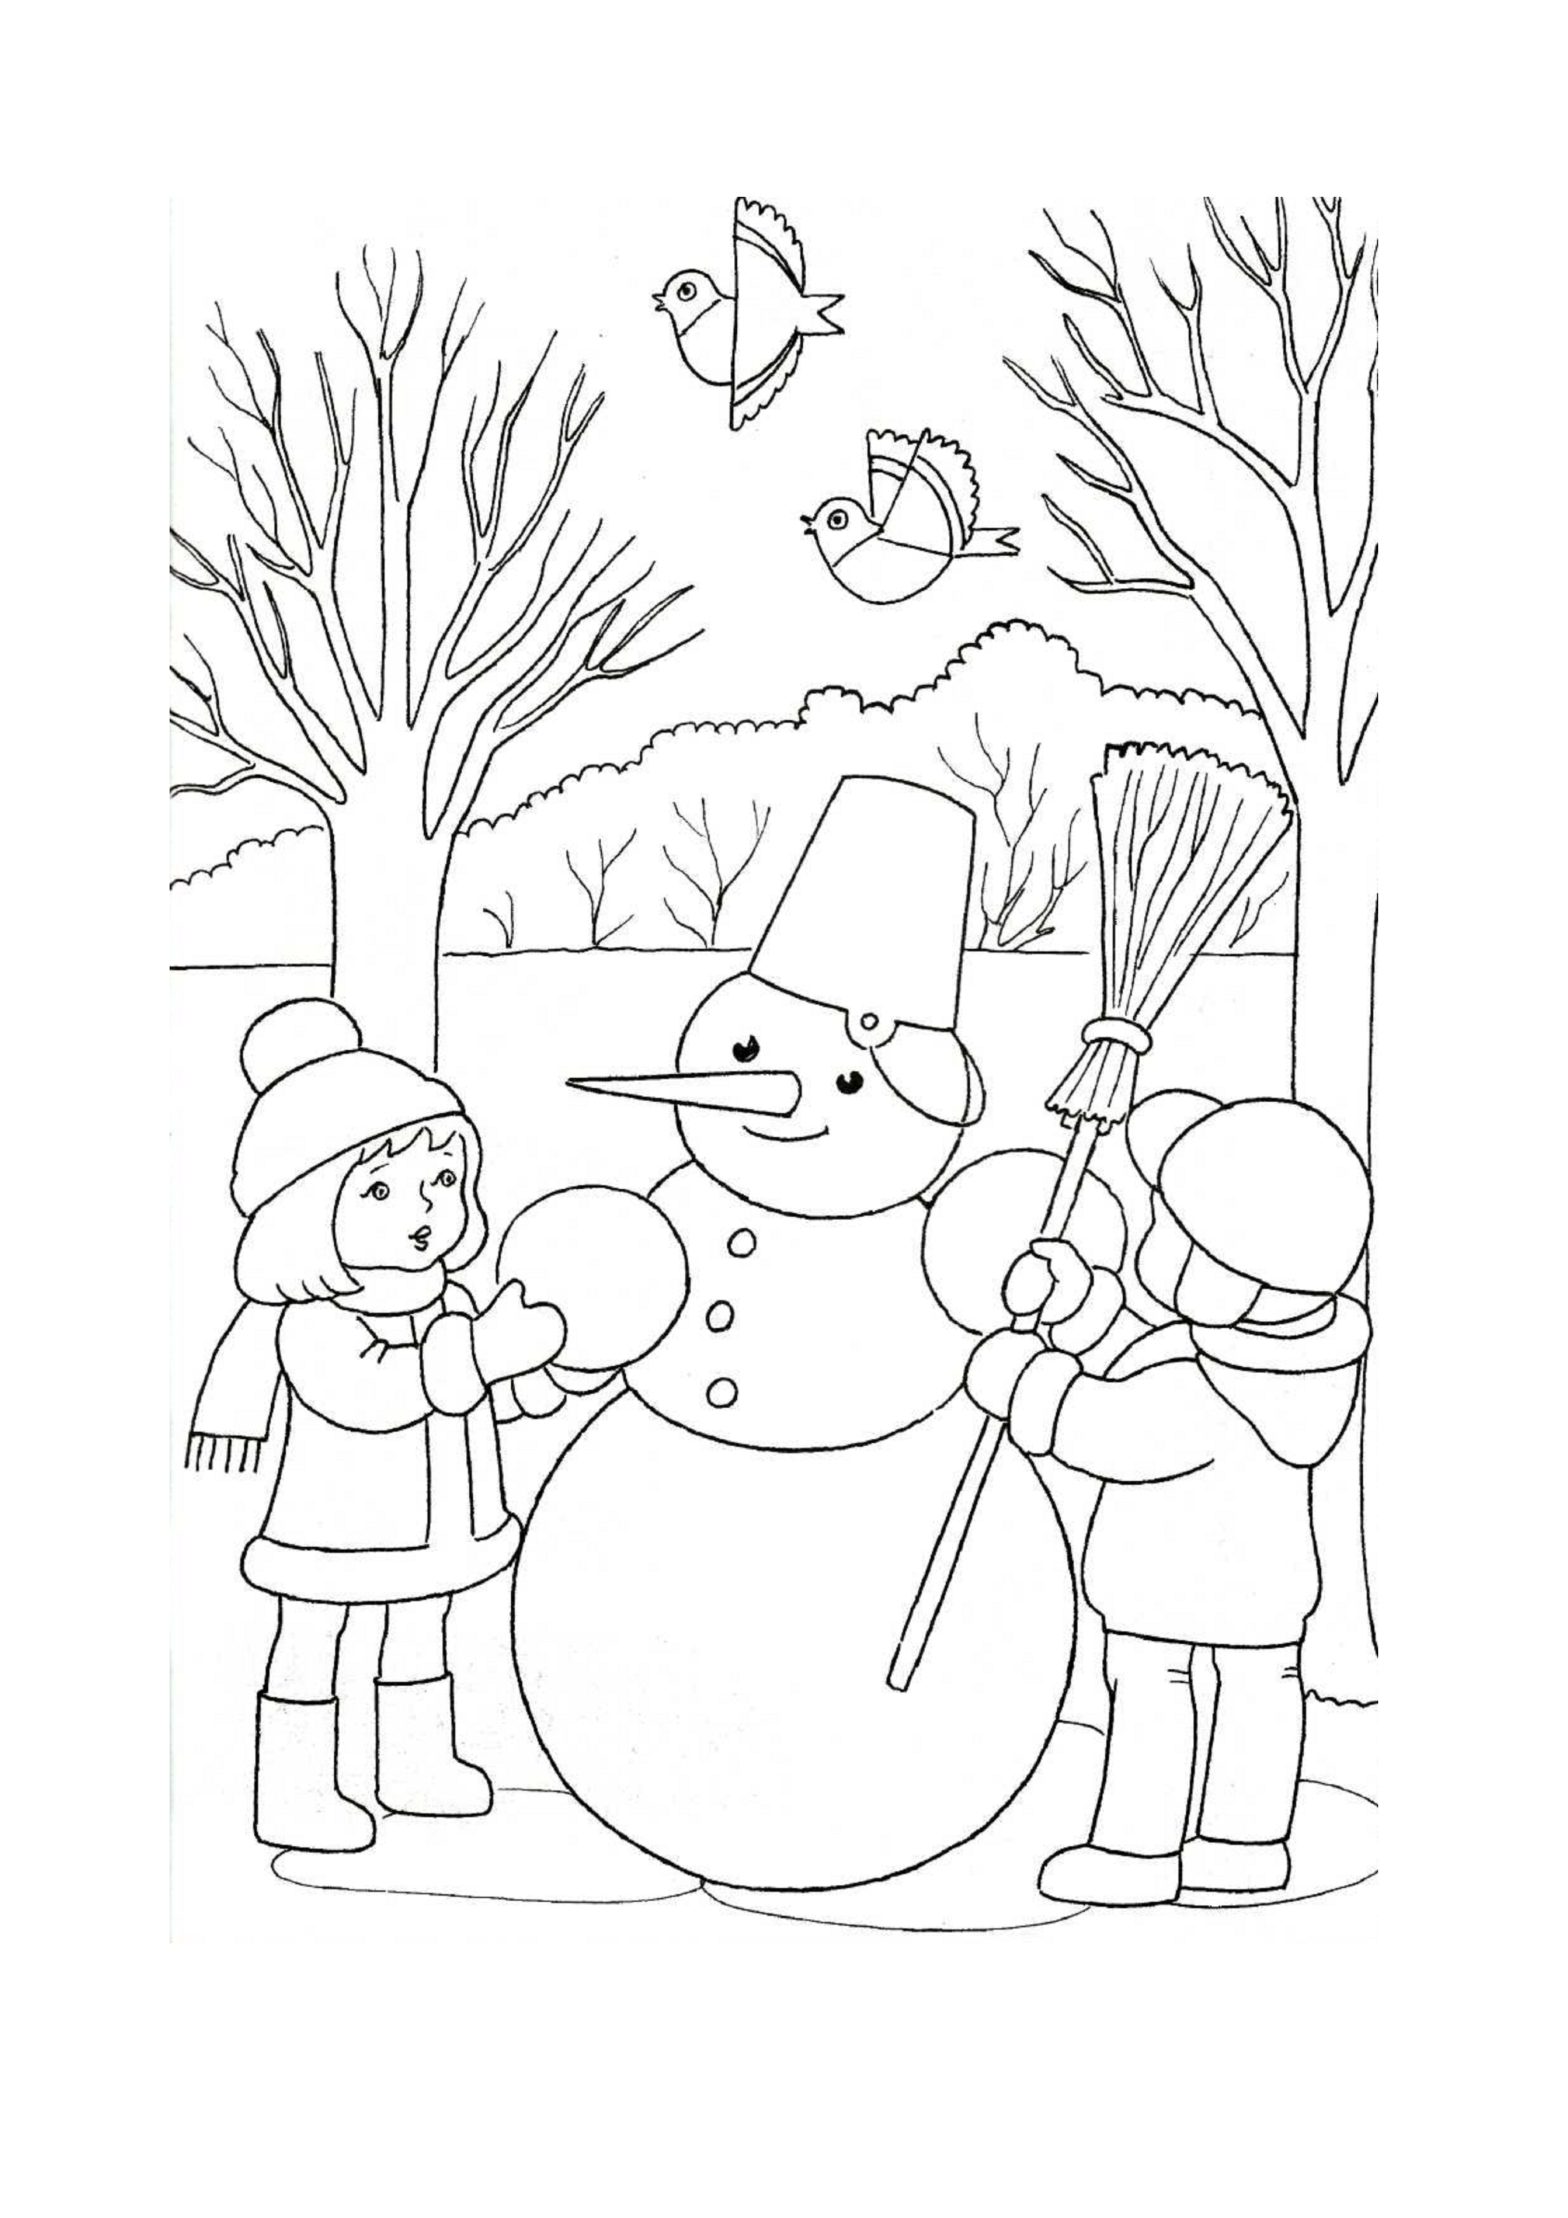 Раскраска для детей: мальчик и девочка во дворе слепили снежную бабу (дети)